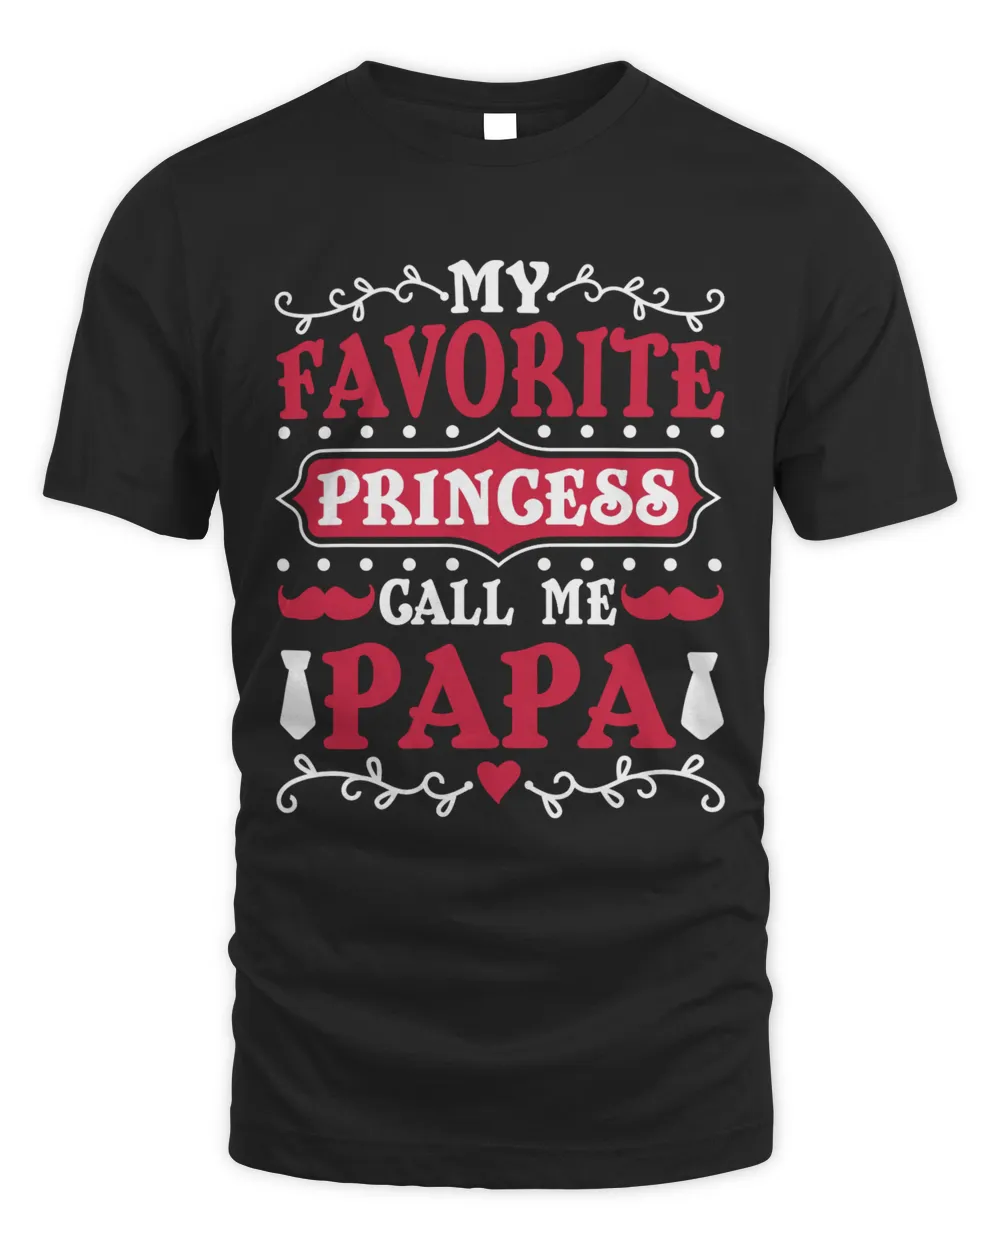 My favorite Princess call me papa